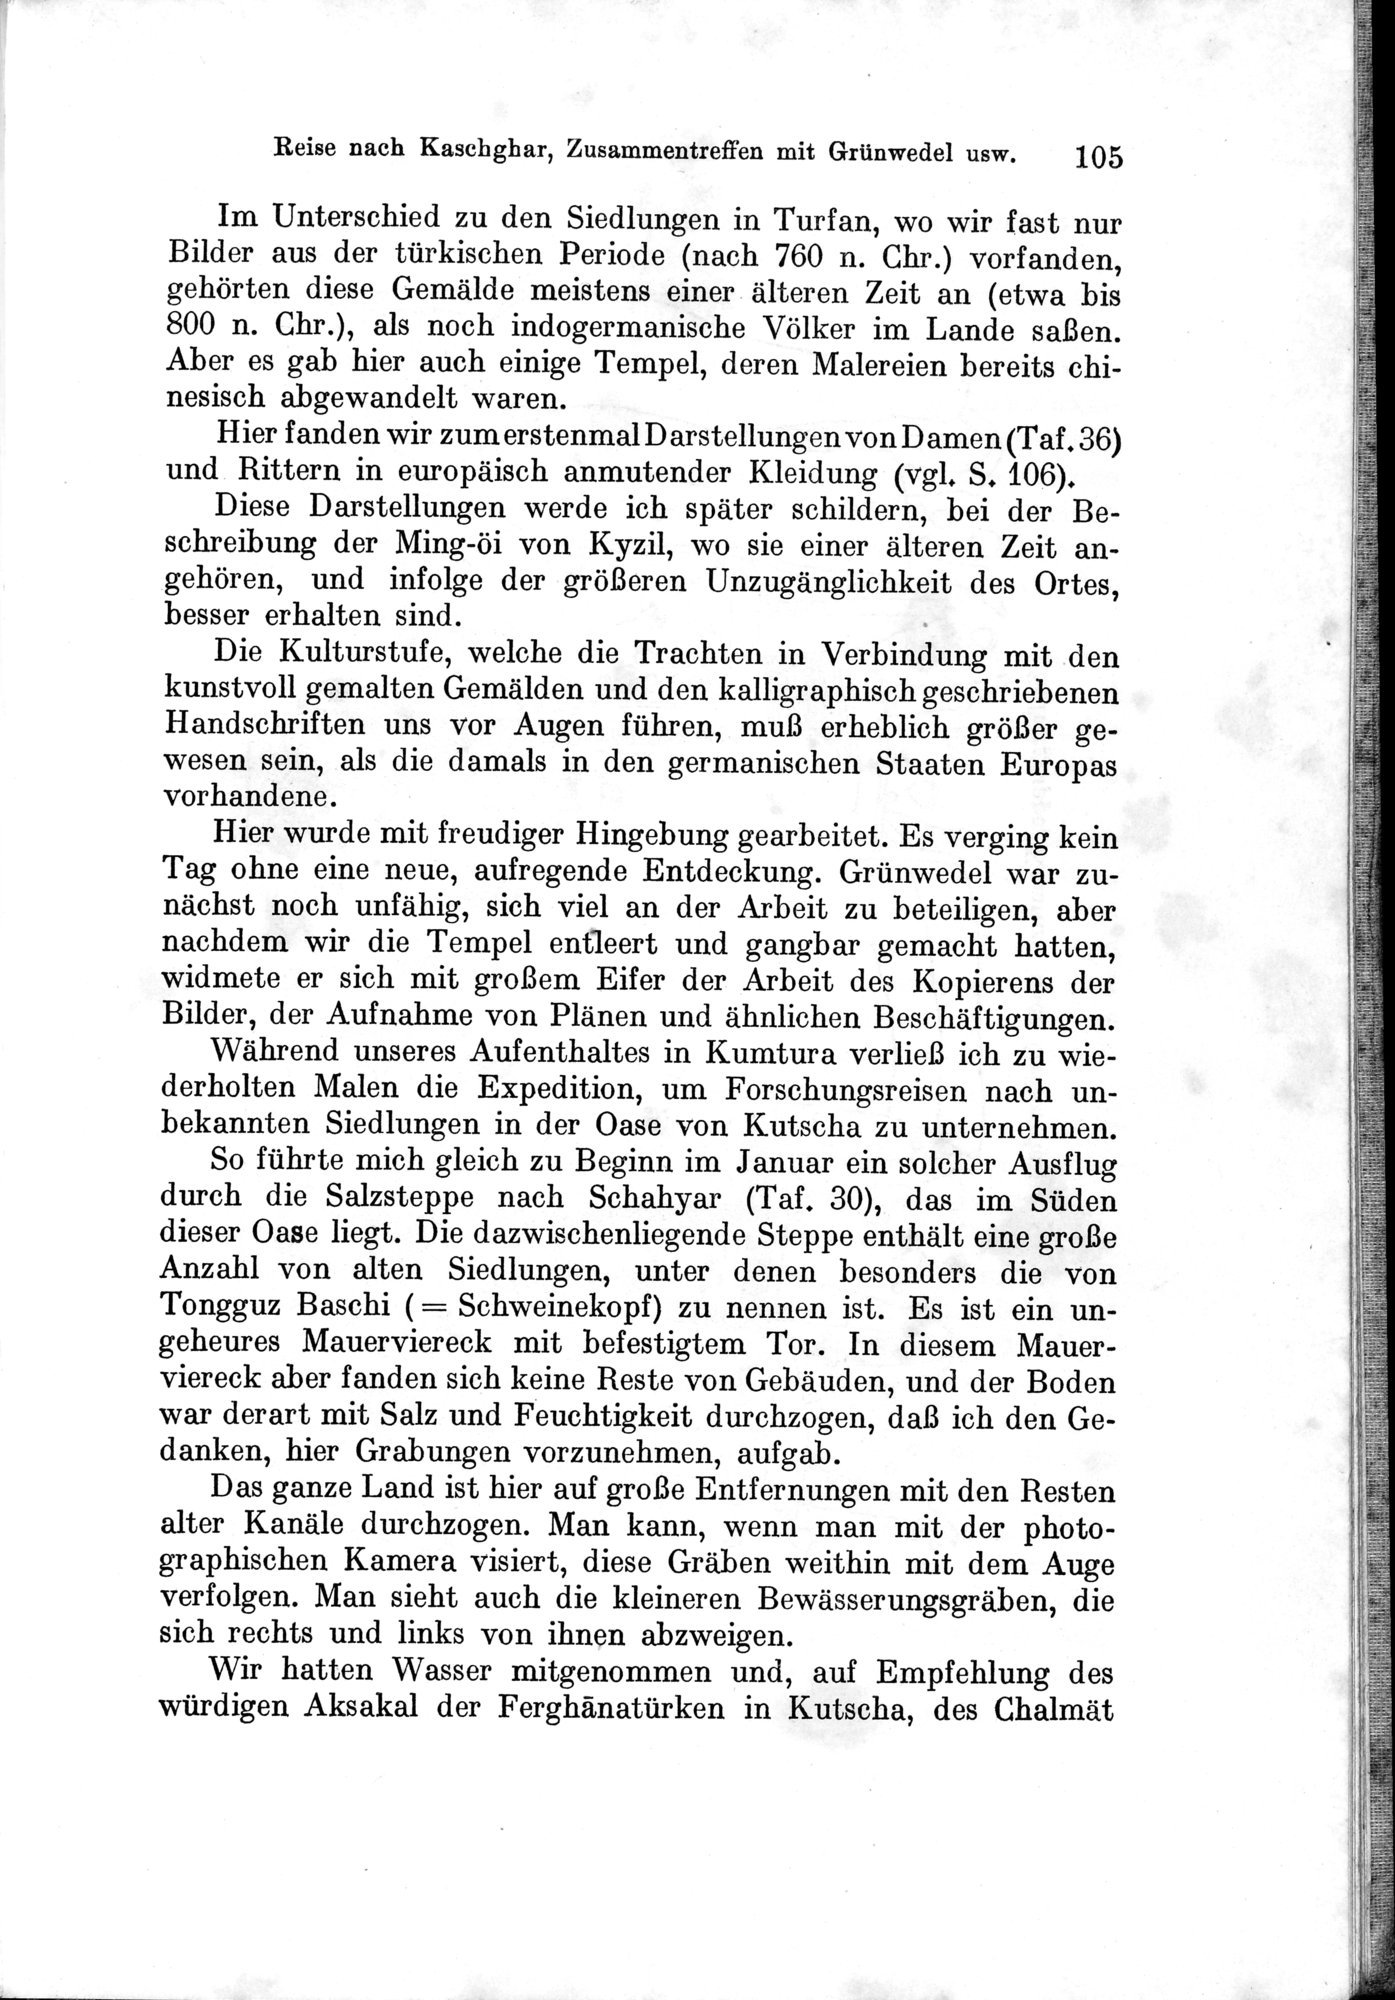 Auf Hellas Spuren in Ostturkistan : vol.1 / Page 155 (Grayscale High Resolution Image)